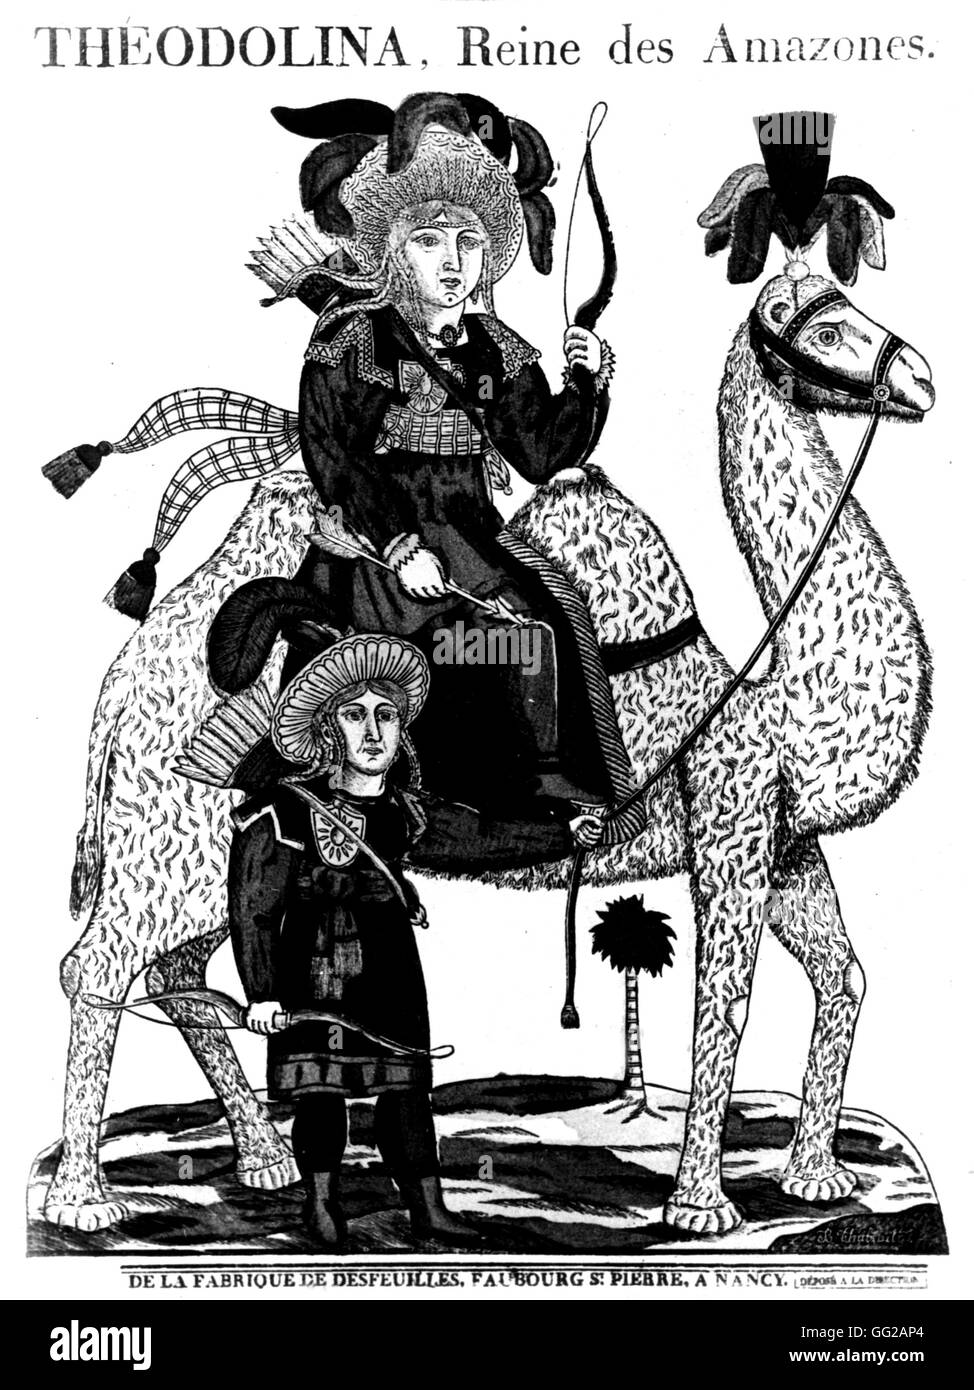 De droit de Nancy. Teodolinda, Amazon queen, monté sur un chameau France vers 1820 Bibliothèque des Arts Décoratifs Banque D'Images